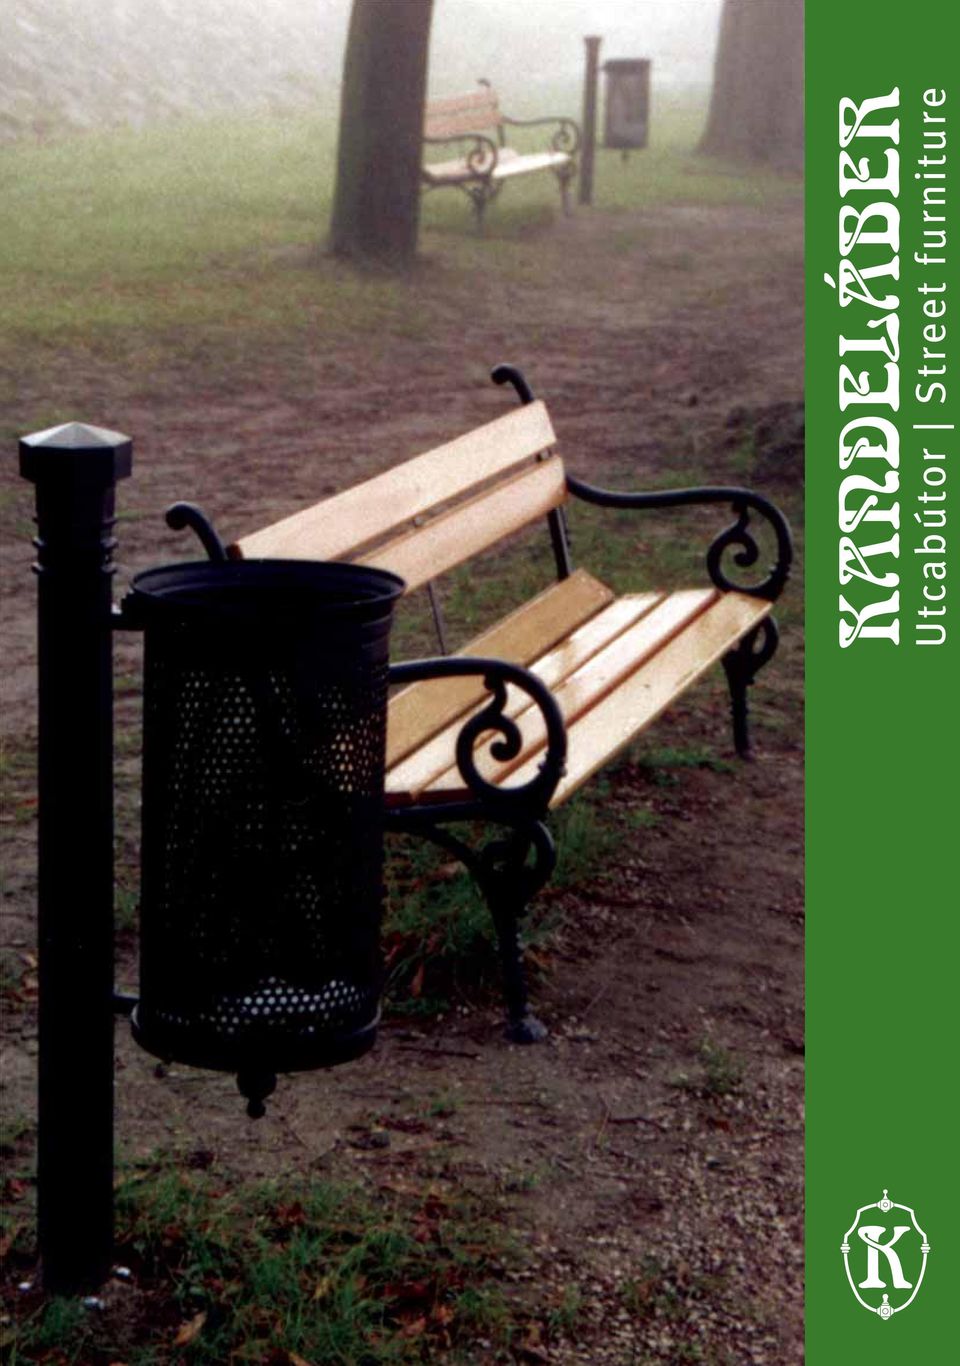 Utcabútor Street furniture - PDF Ingyenes letöltés